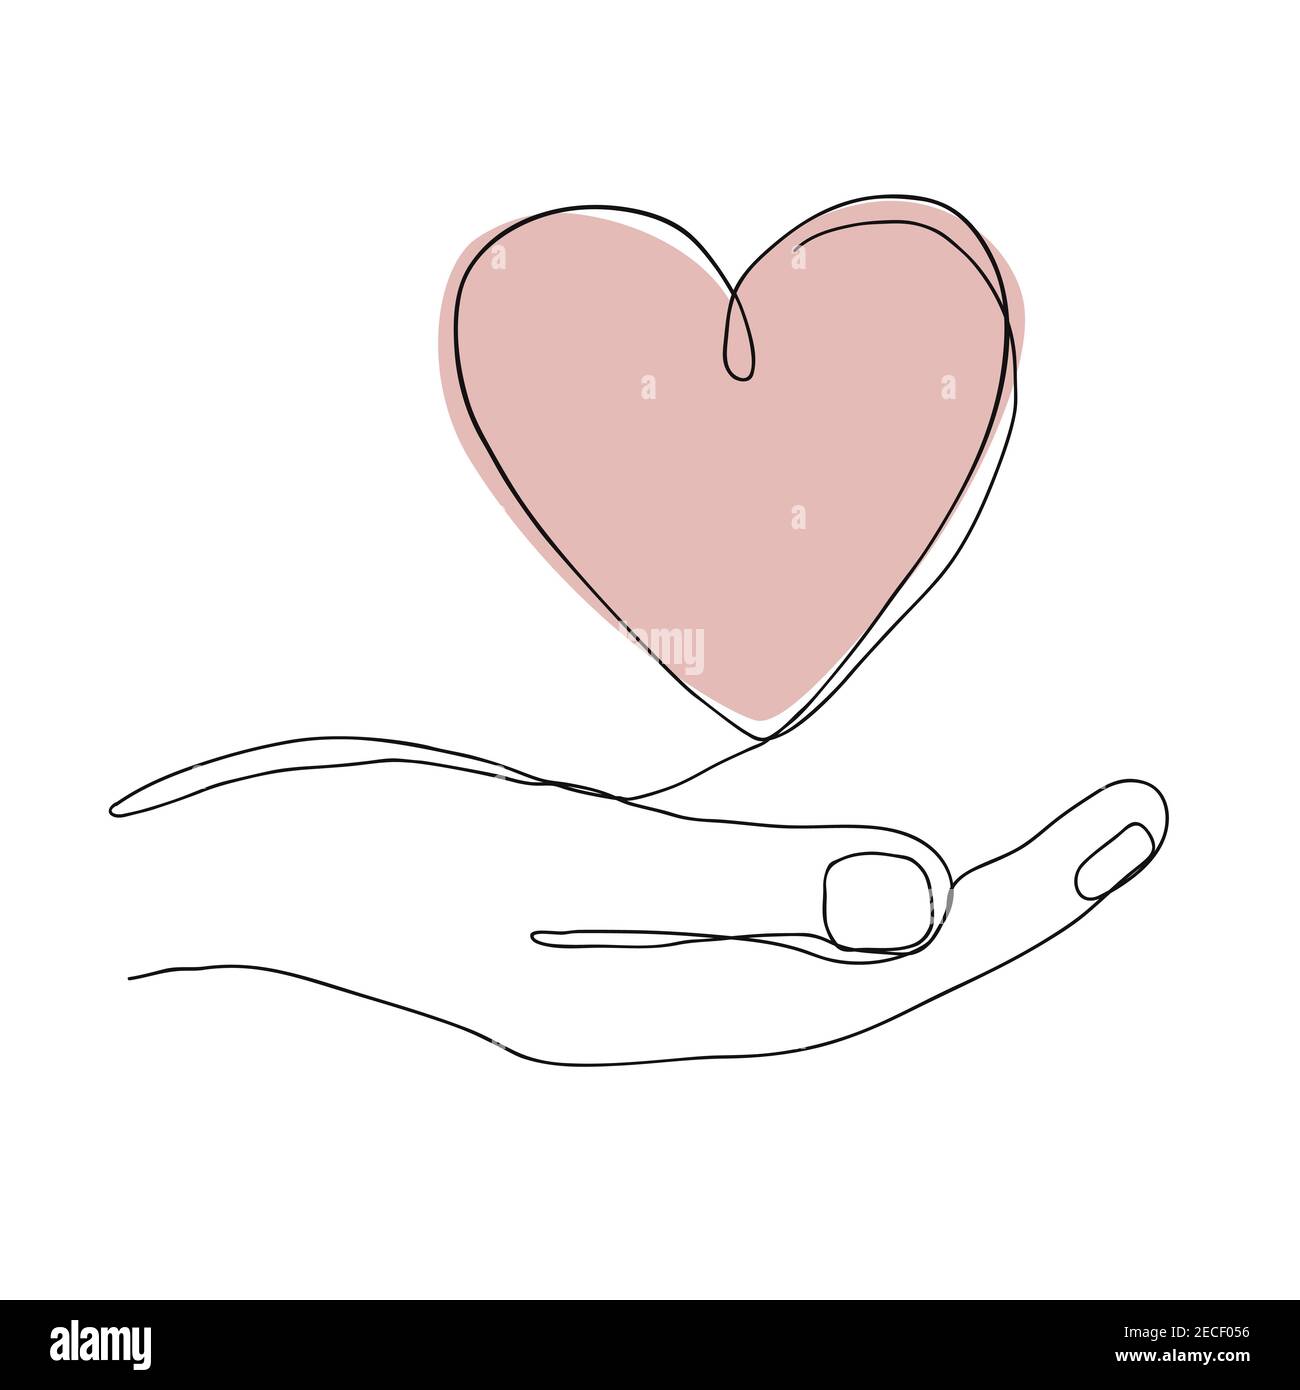 Disegno a linea continua singola di una mano che tiene un cuore su sfondo bianco. Illustrazione vettoriale moderna per il banner di San Valentino, il giorno del donatore o l'organo Illustrazione Vettoriale